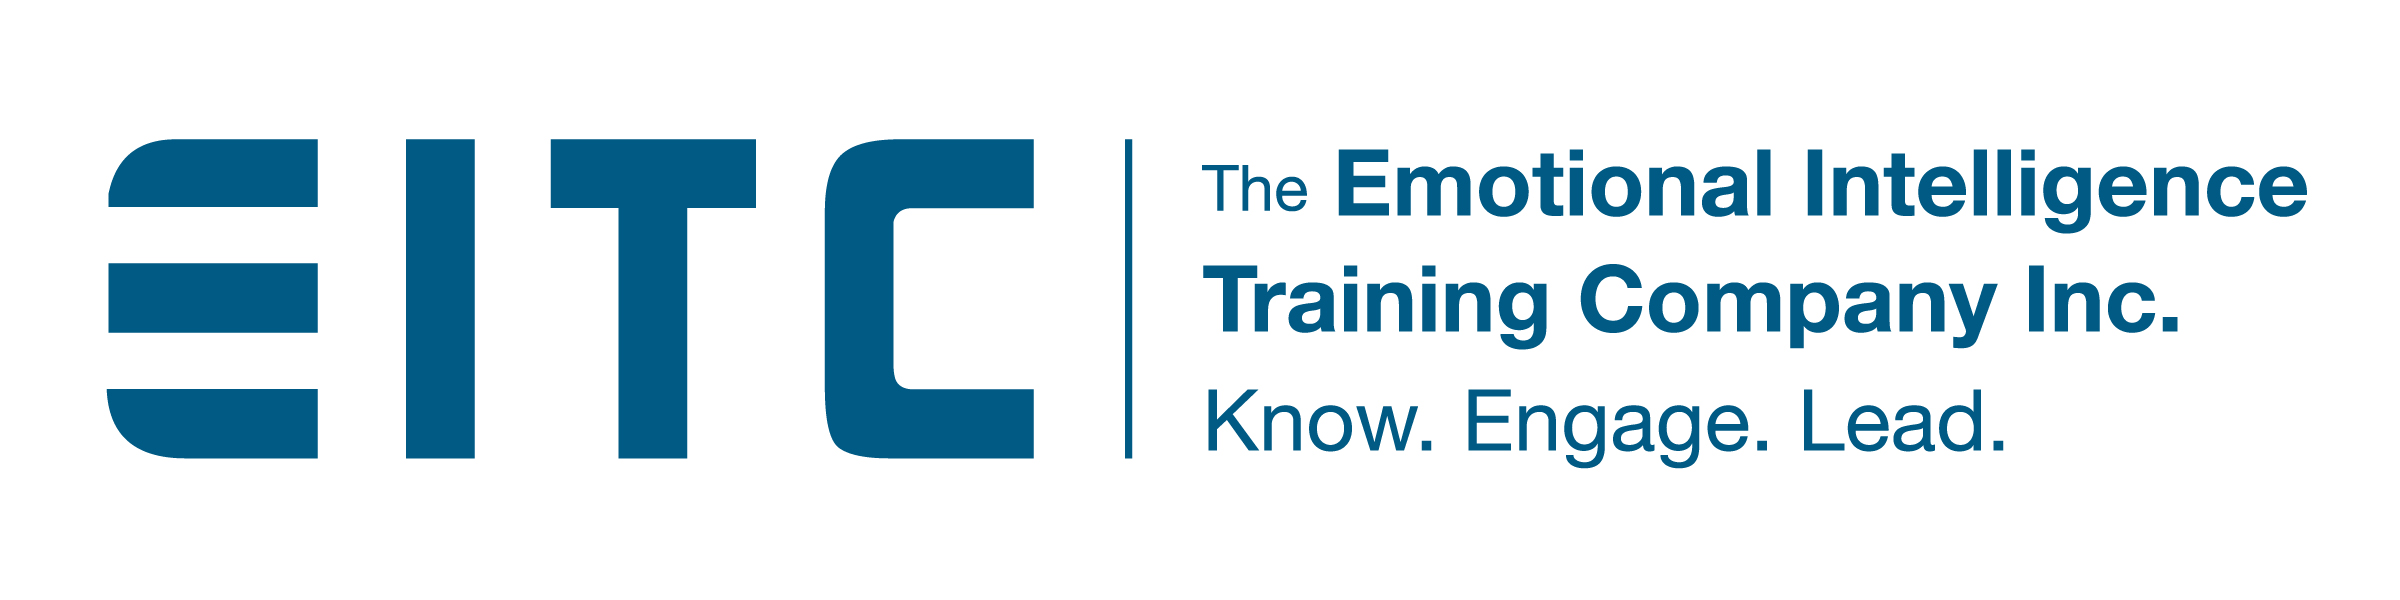 The Emotional Intelligence Training Company, Inc.